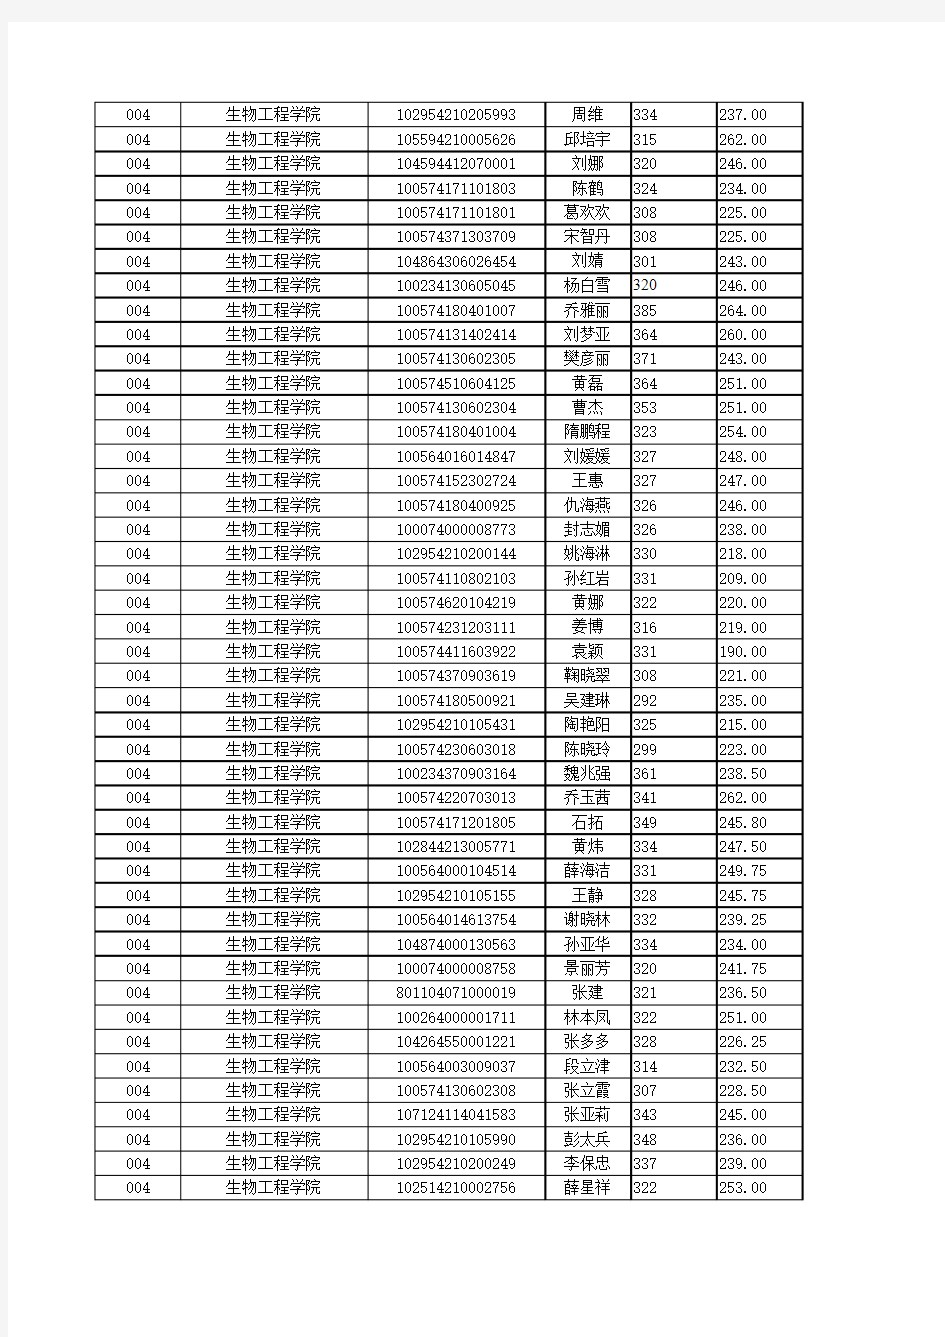 天津科技大学2015年考研成绩表(初试+复试)